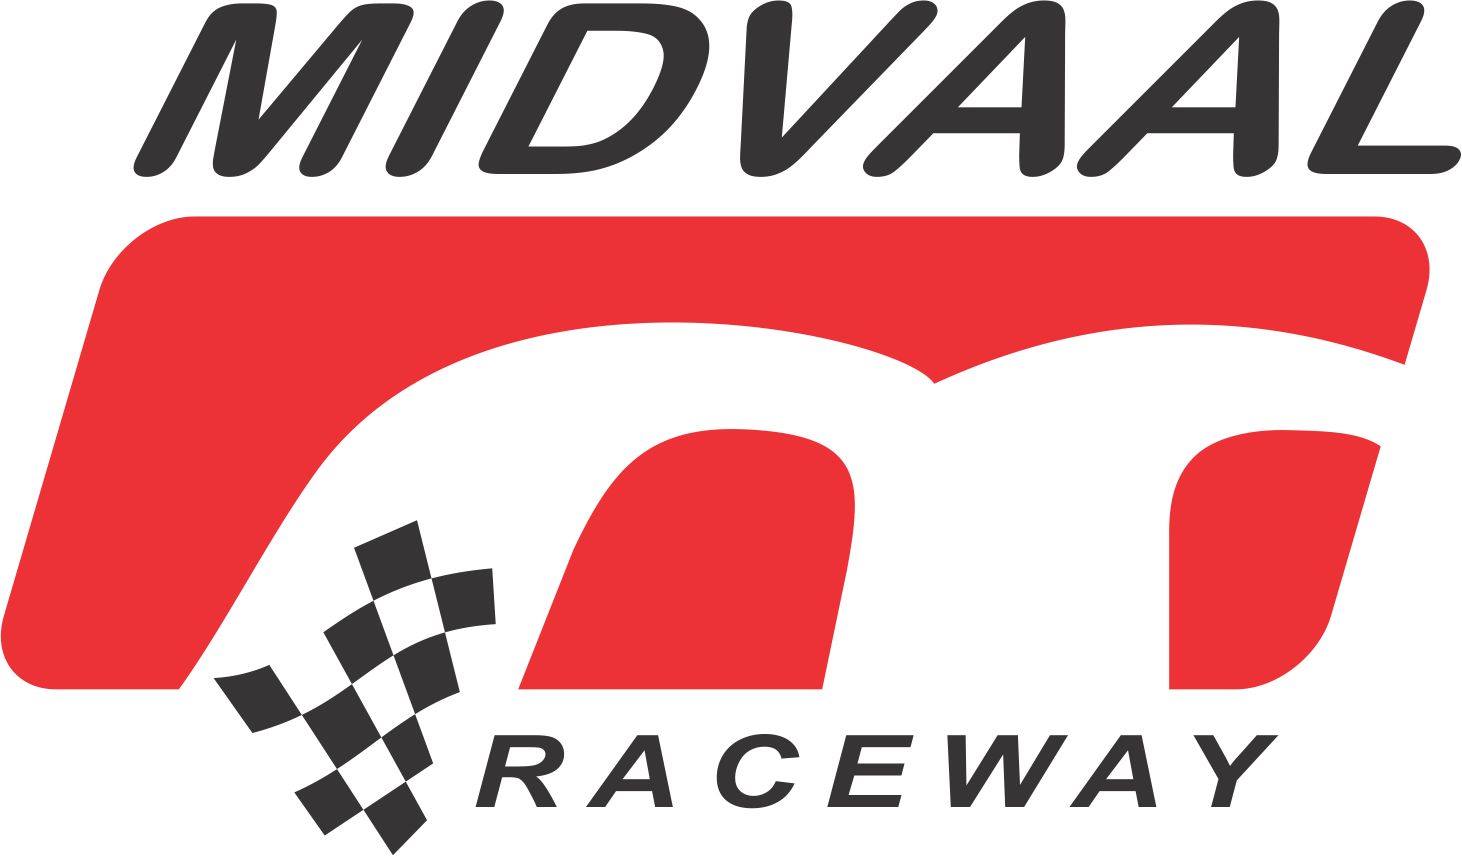 Midvaal Raceway